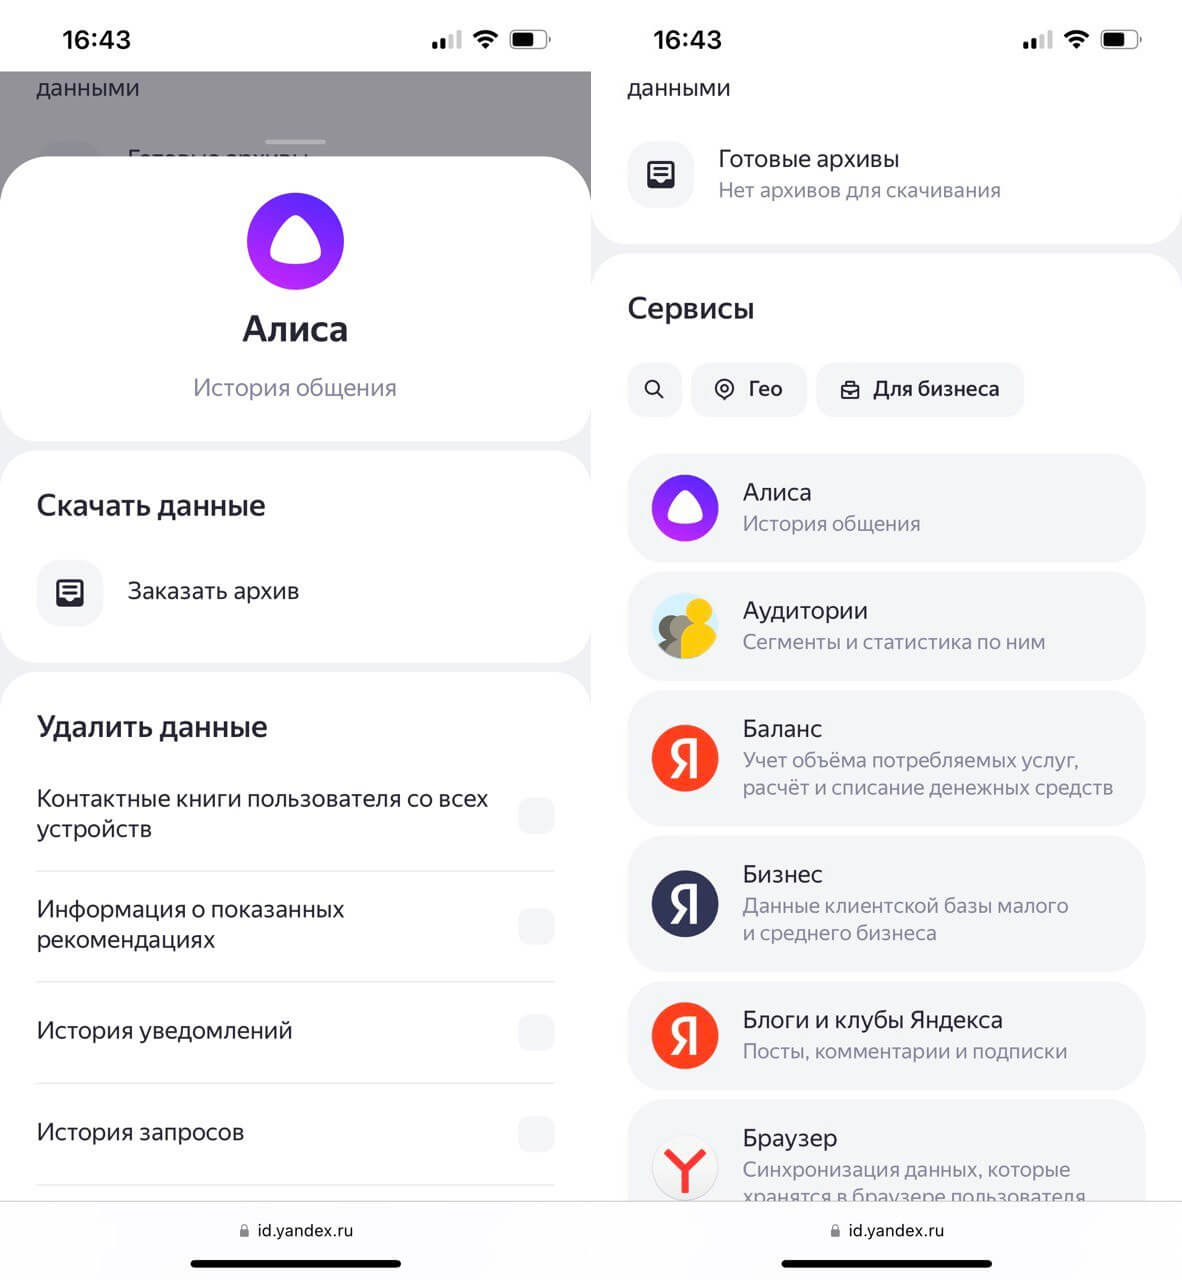 Как посмотреть историю запросов в аккаунте Яндекса. Заказать архив можно прямо через аккаунт Яндекса на телефоне. Фото.